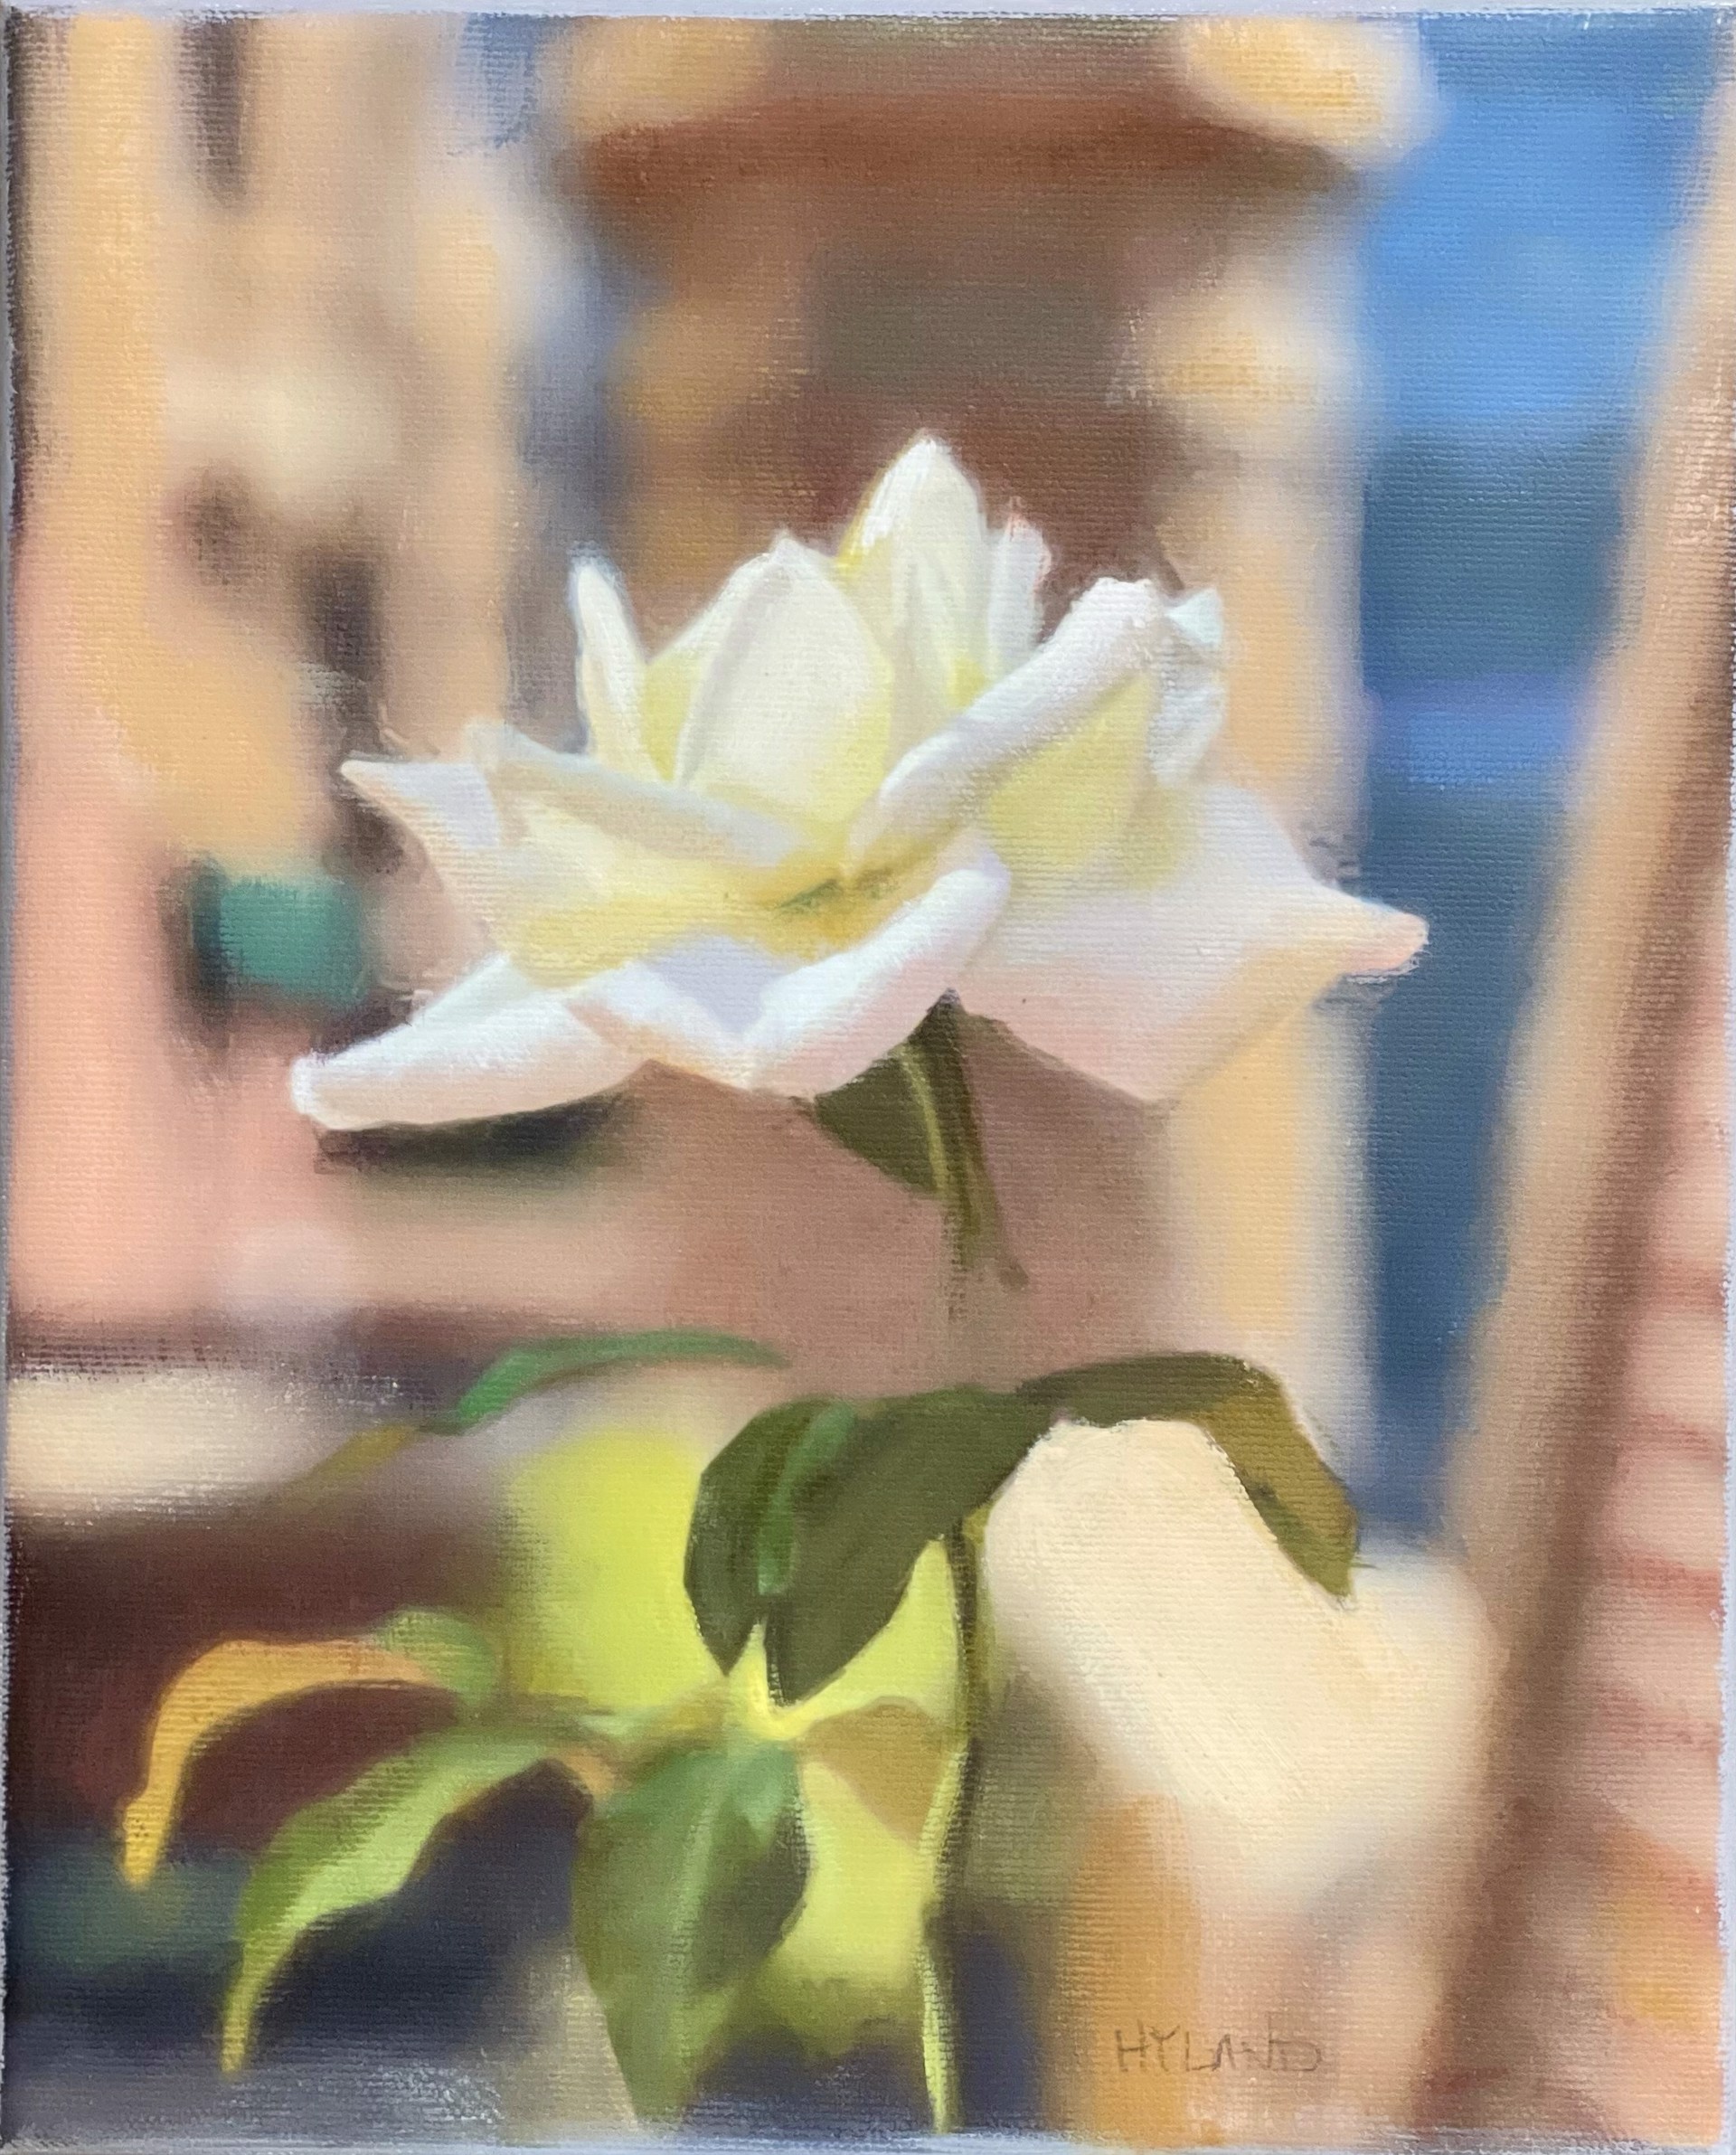 Tudor Rose by John Hyland